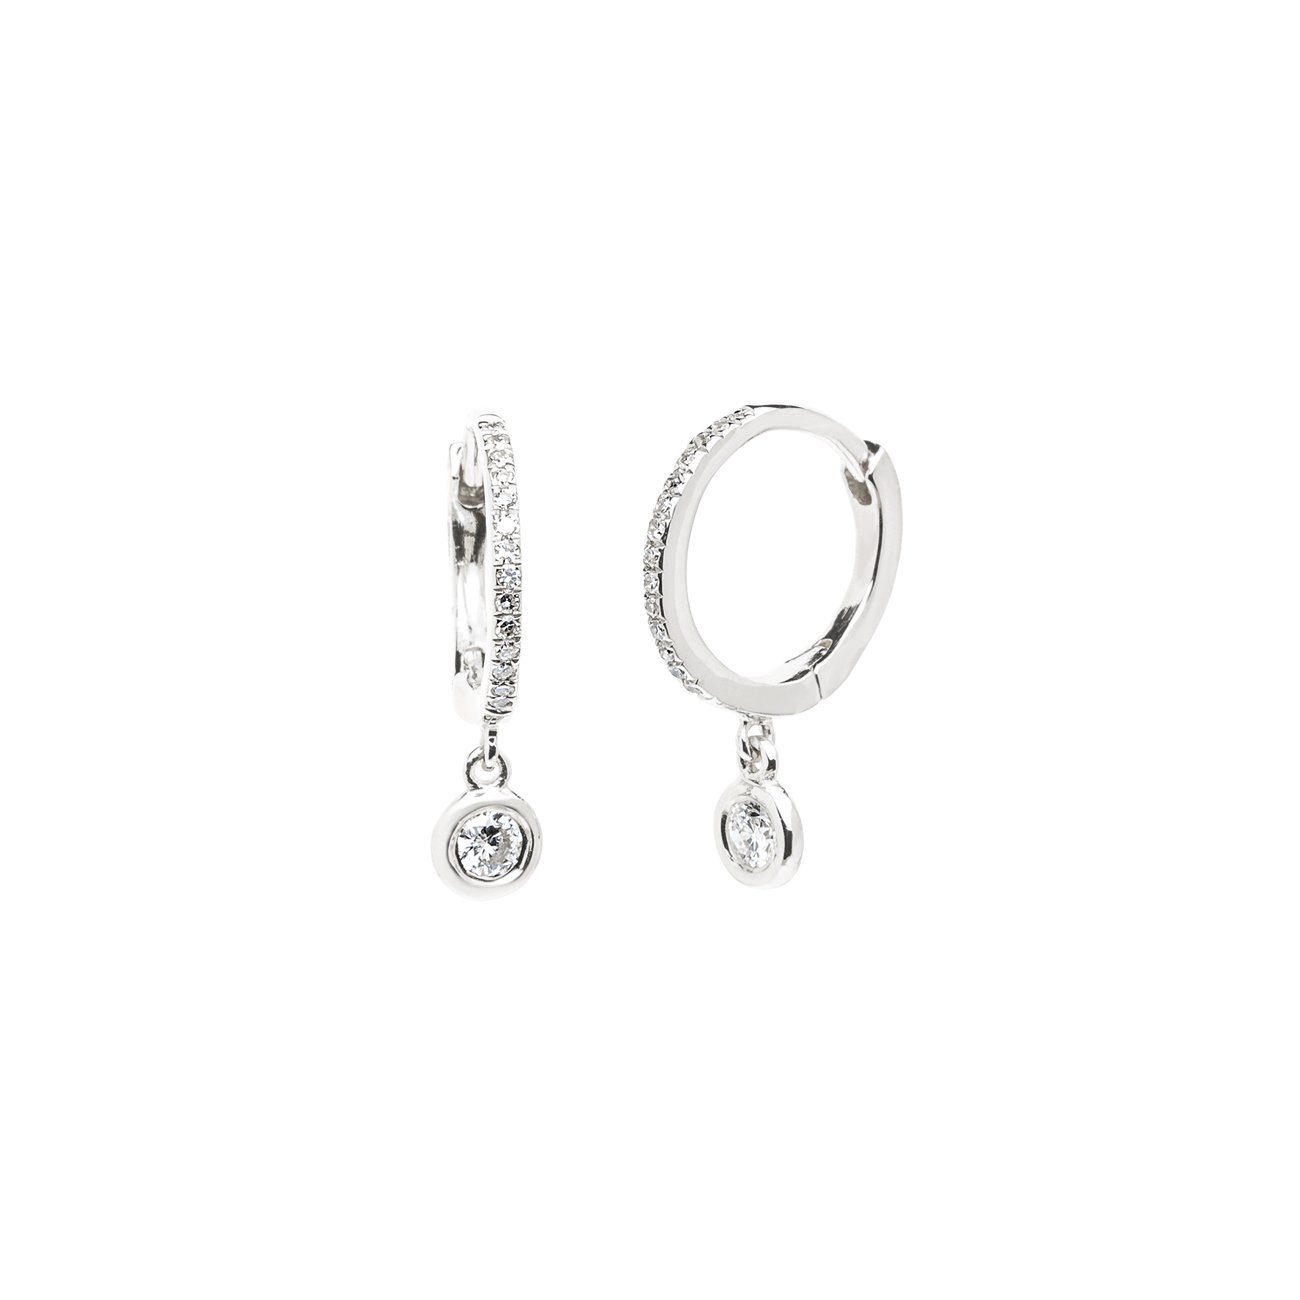 Diamond Drop Earrings Fine Jewelry Earrings Princess Bride Diamonds 14K White Gold 